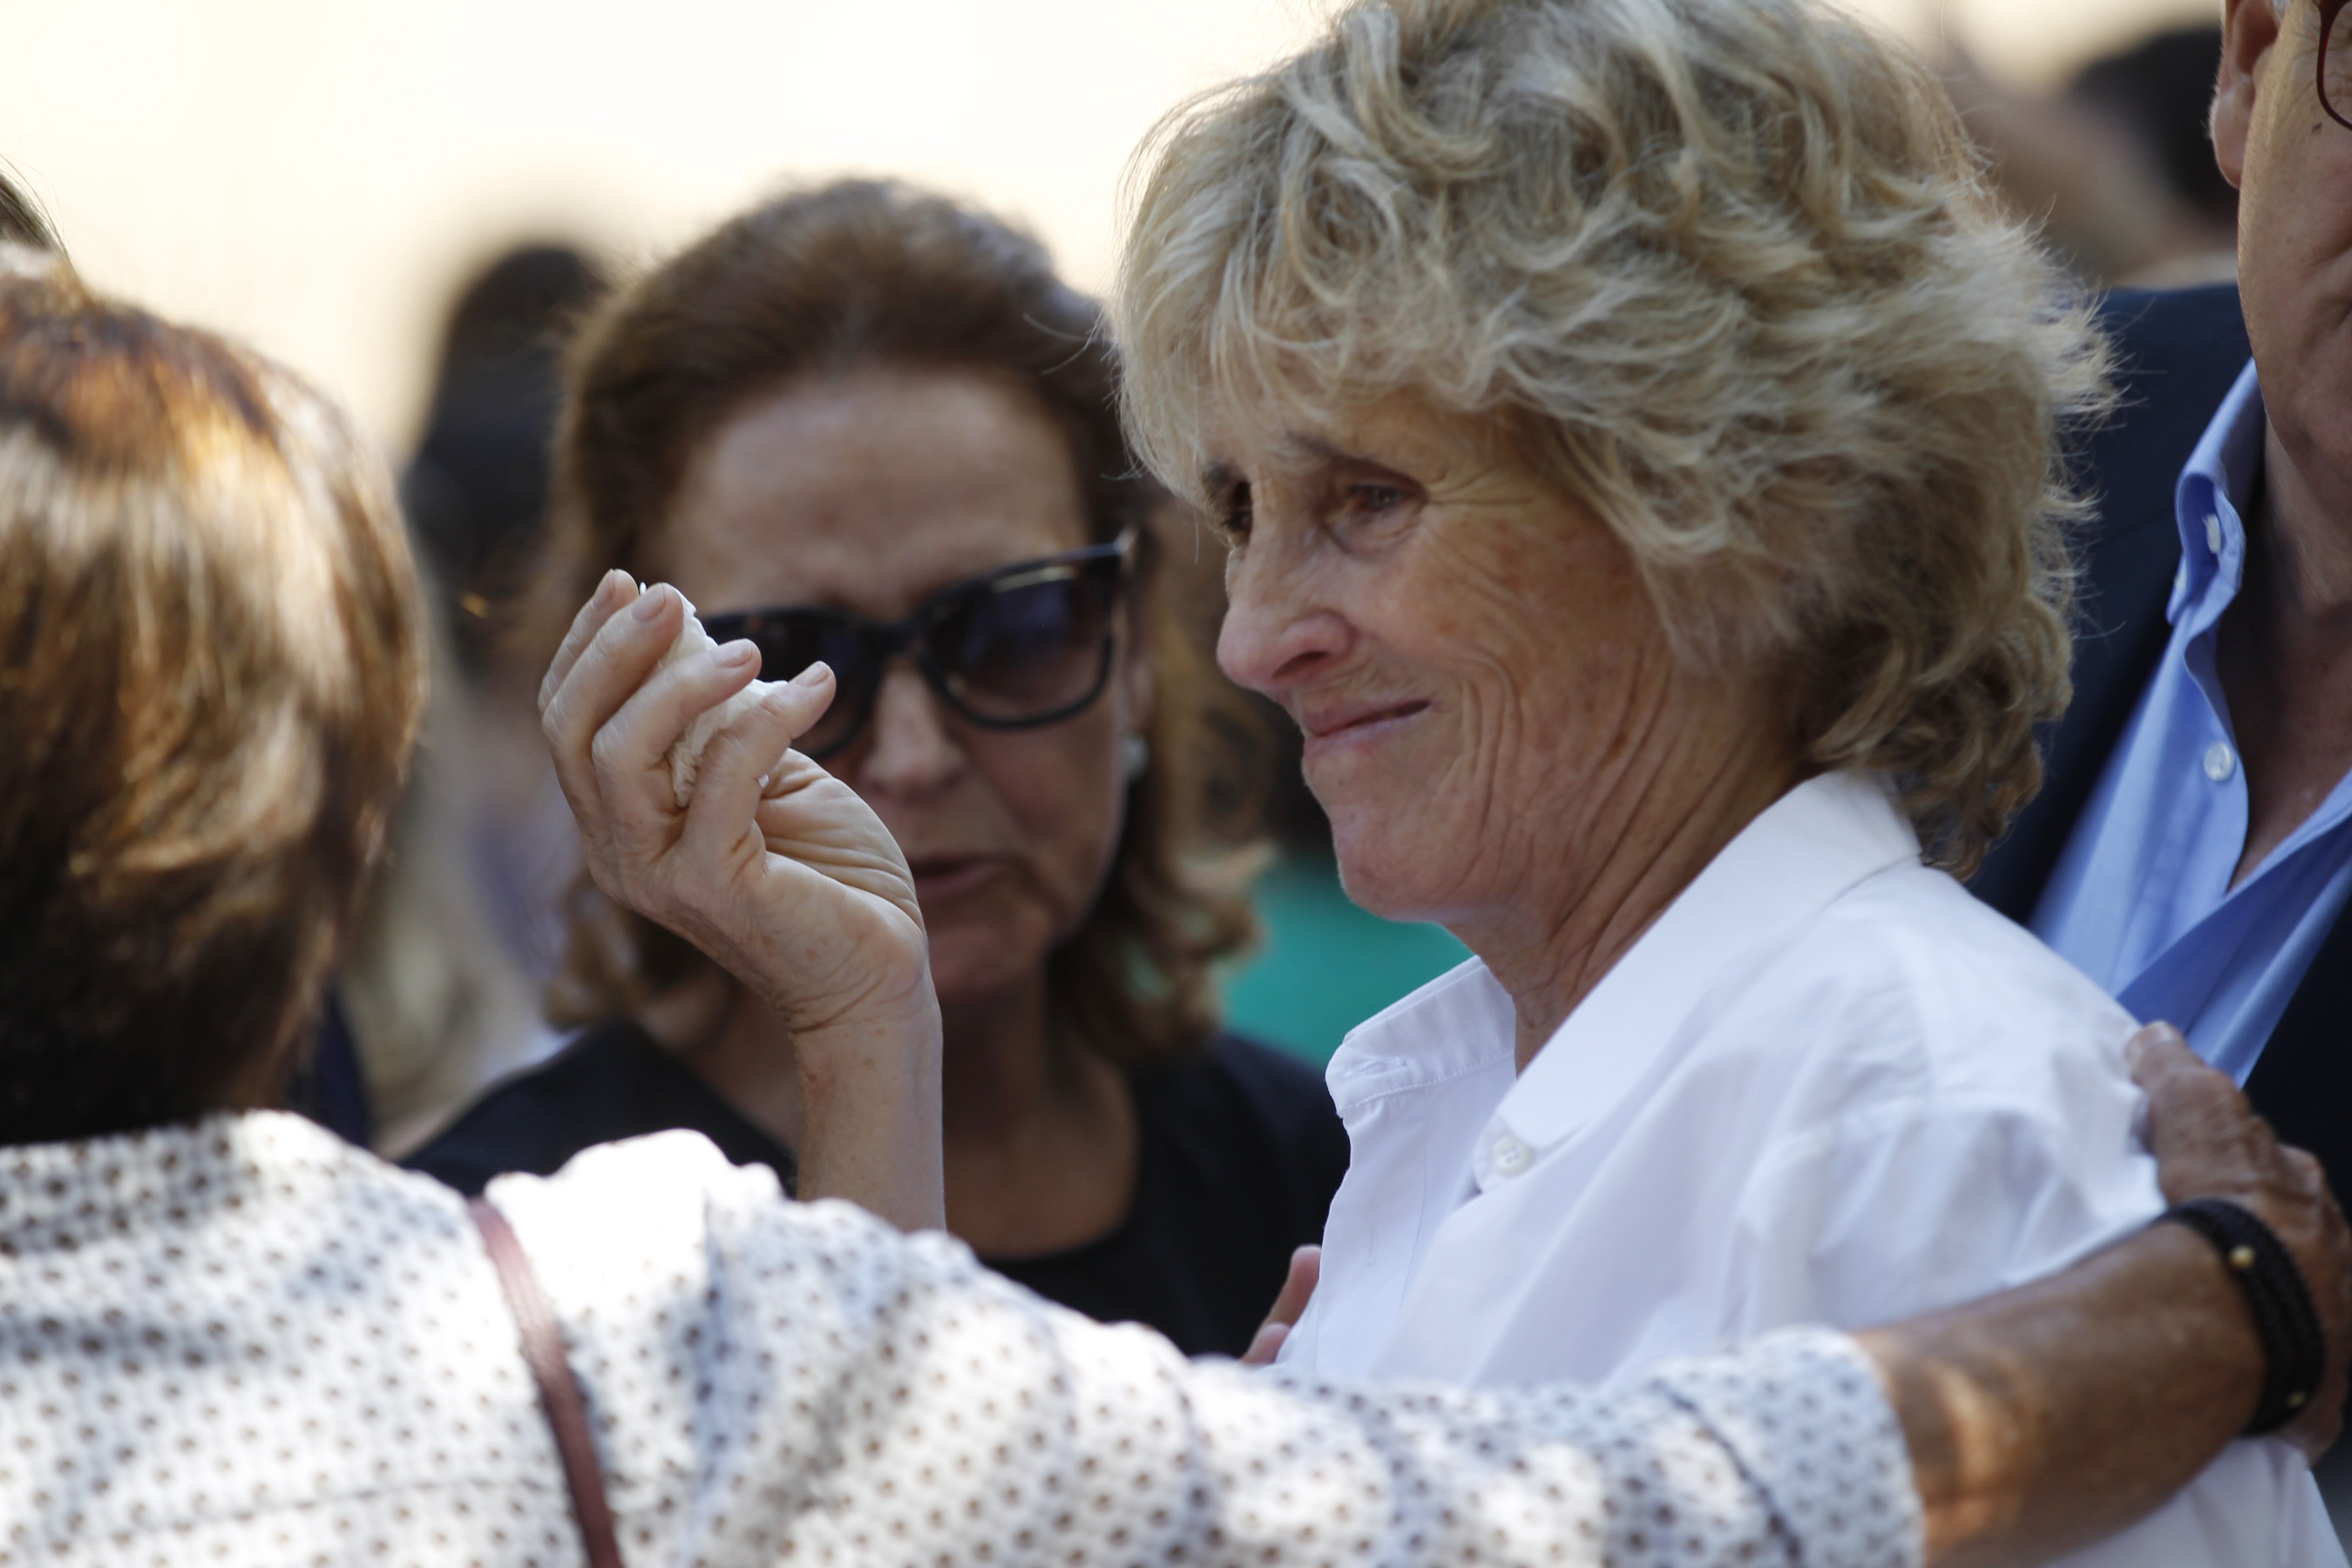 Mercedes Milá, de blanc, plora al funeral de la seva mare, morta als 93 anys